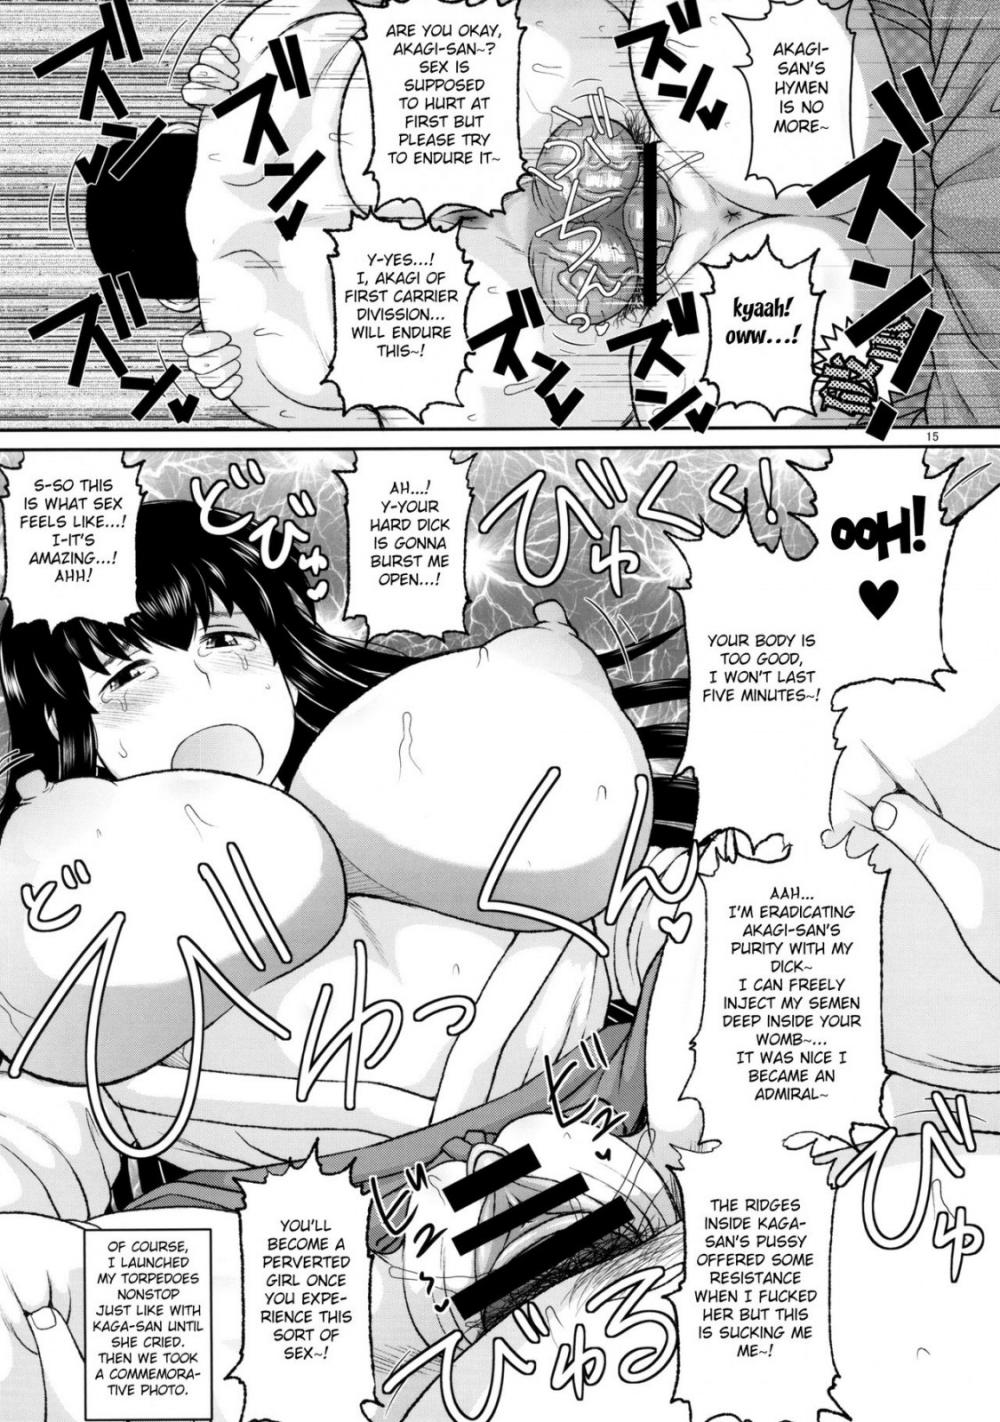 Hentai Manga Comic-Sex Practice With Kaga And Akagi-Read-16